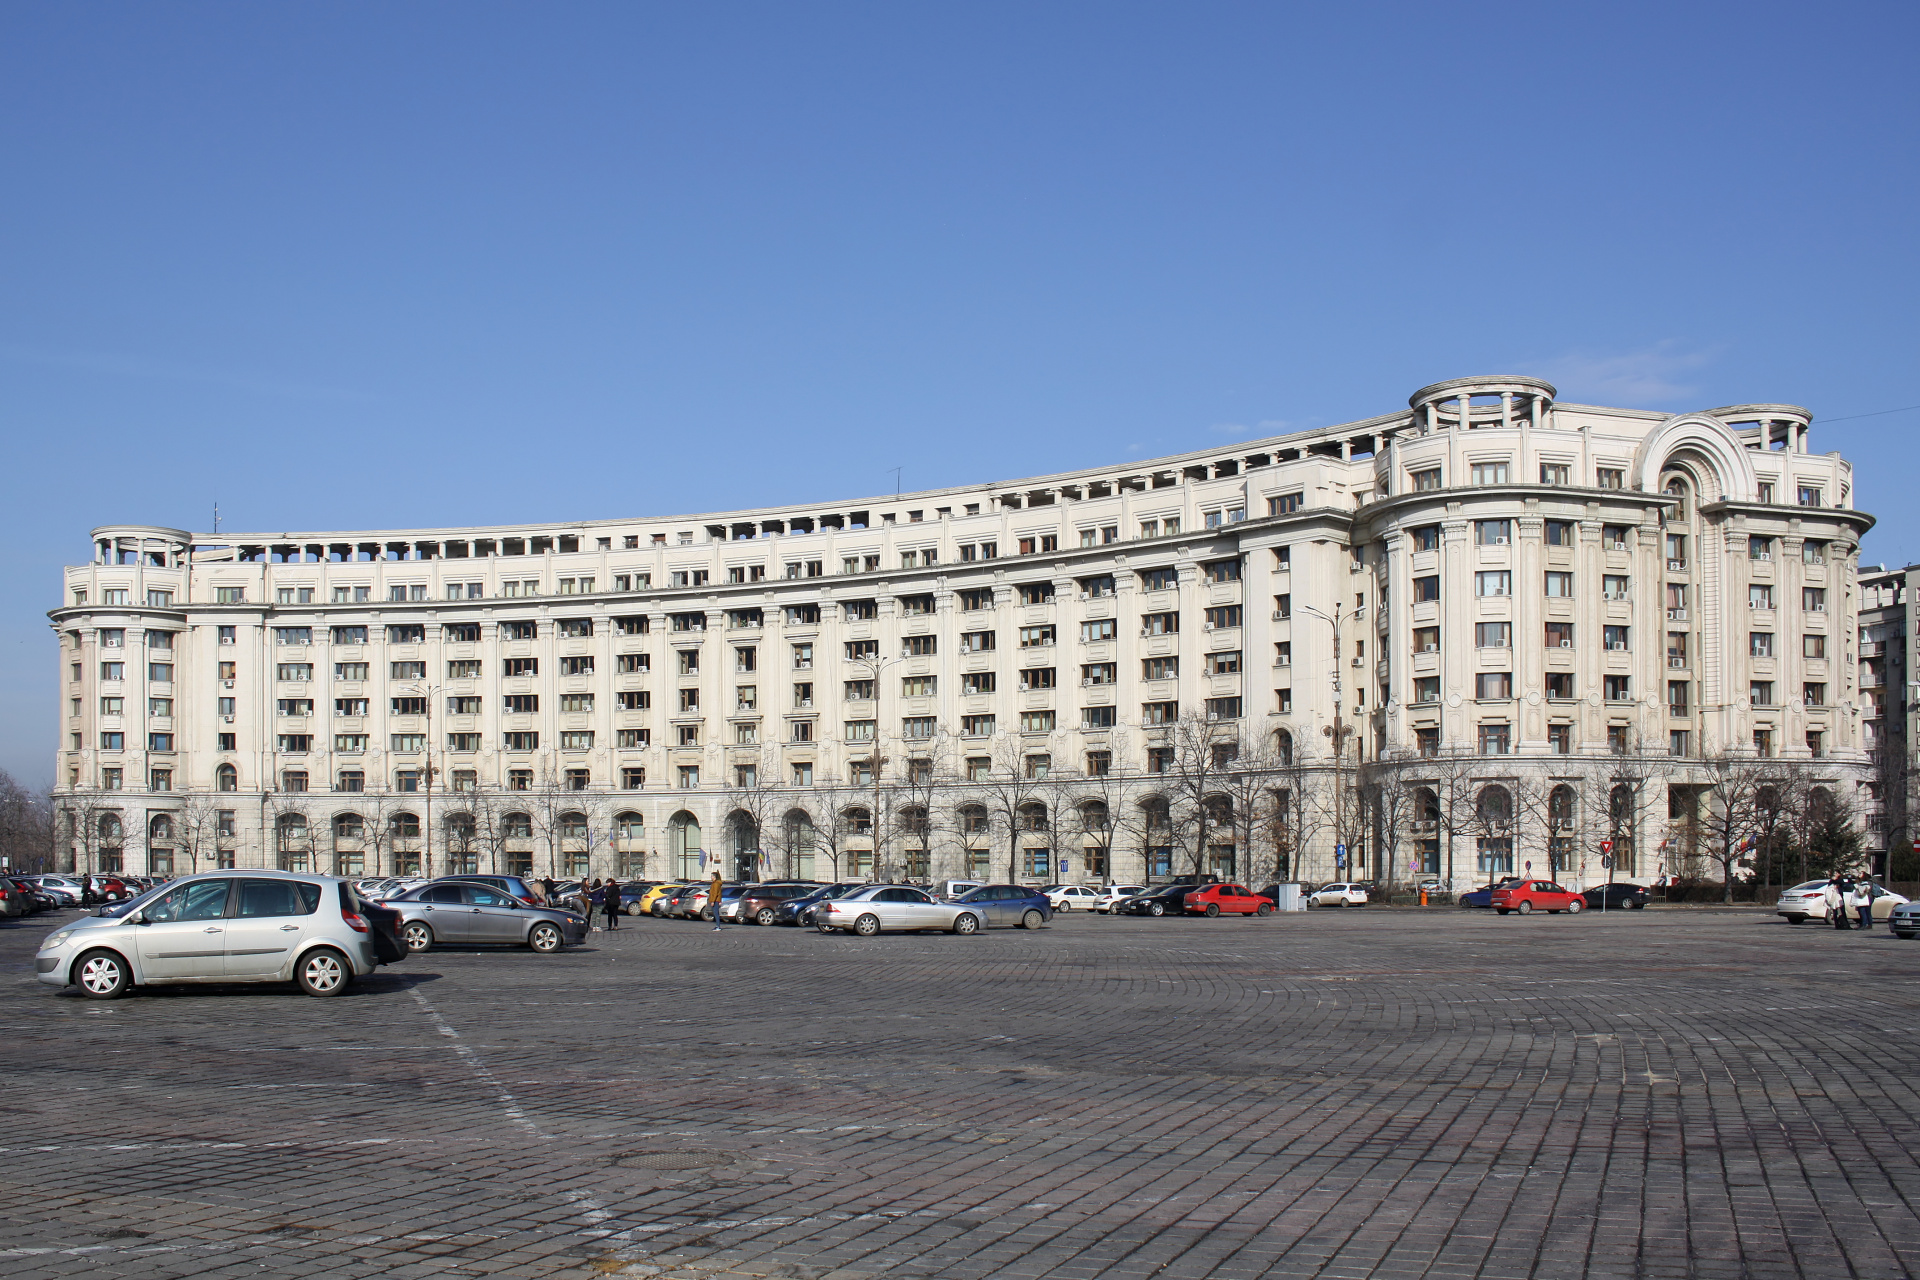 Building at Piața Constituției - Constitution Square (Travels » Bucharest)